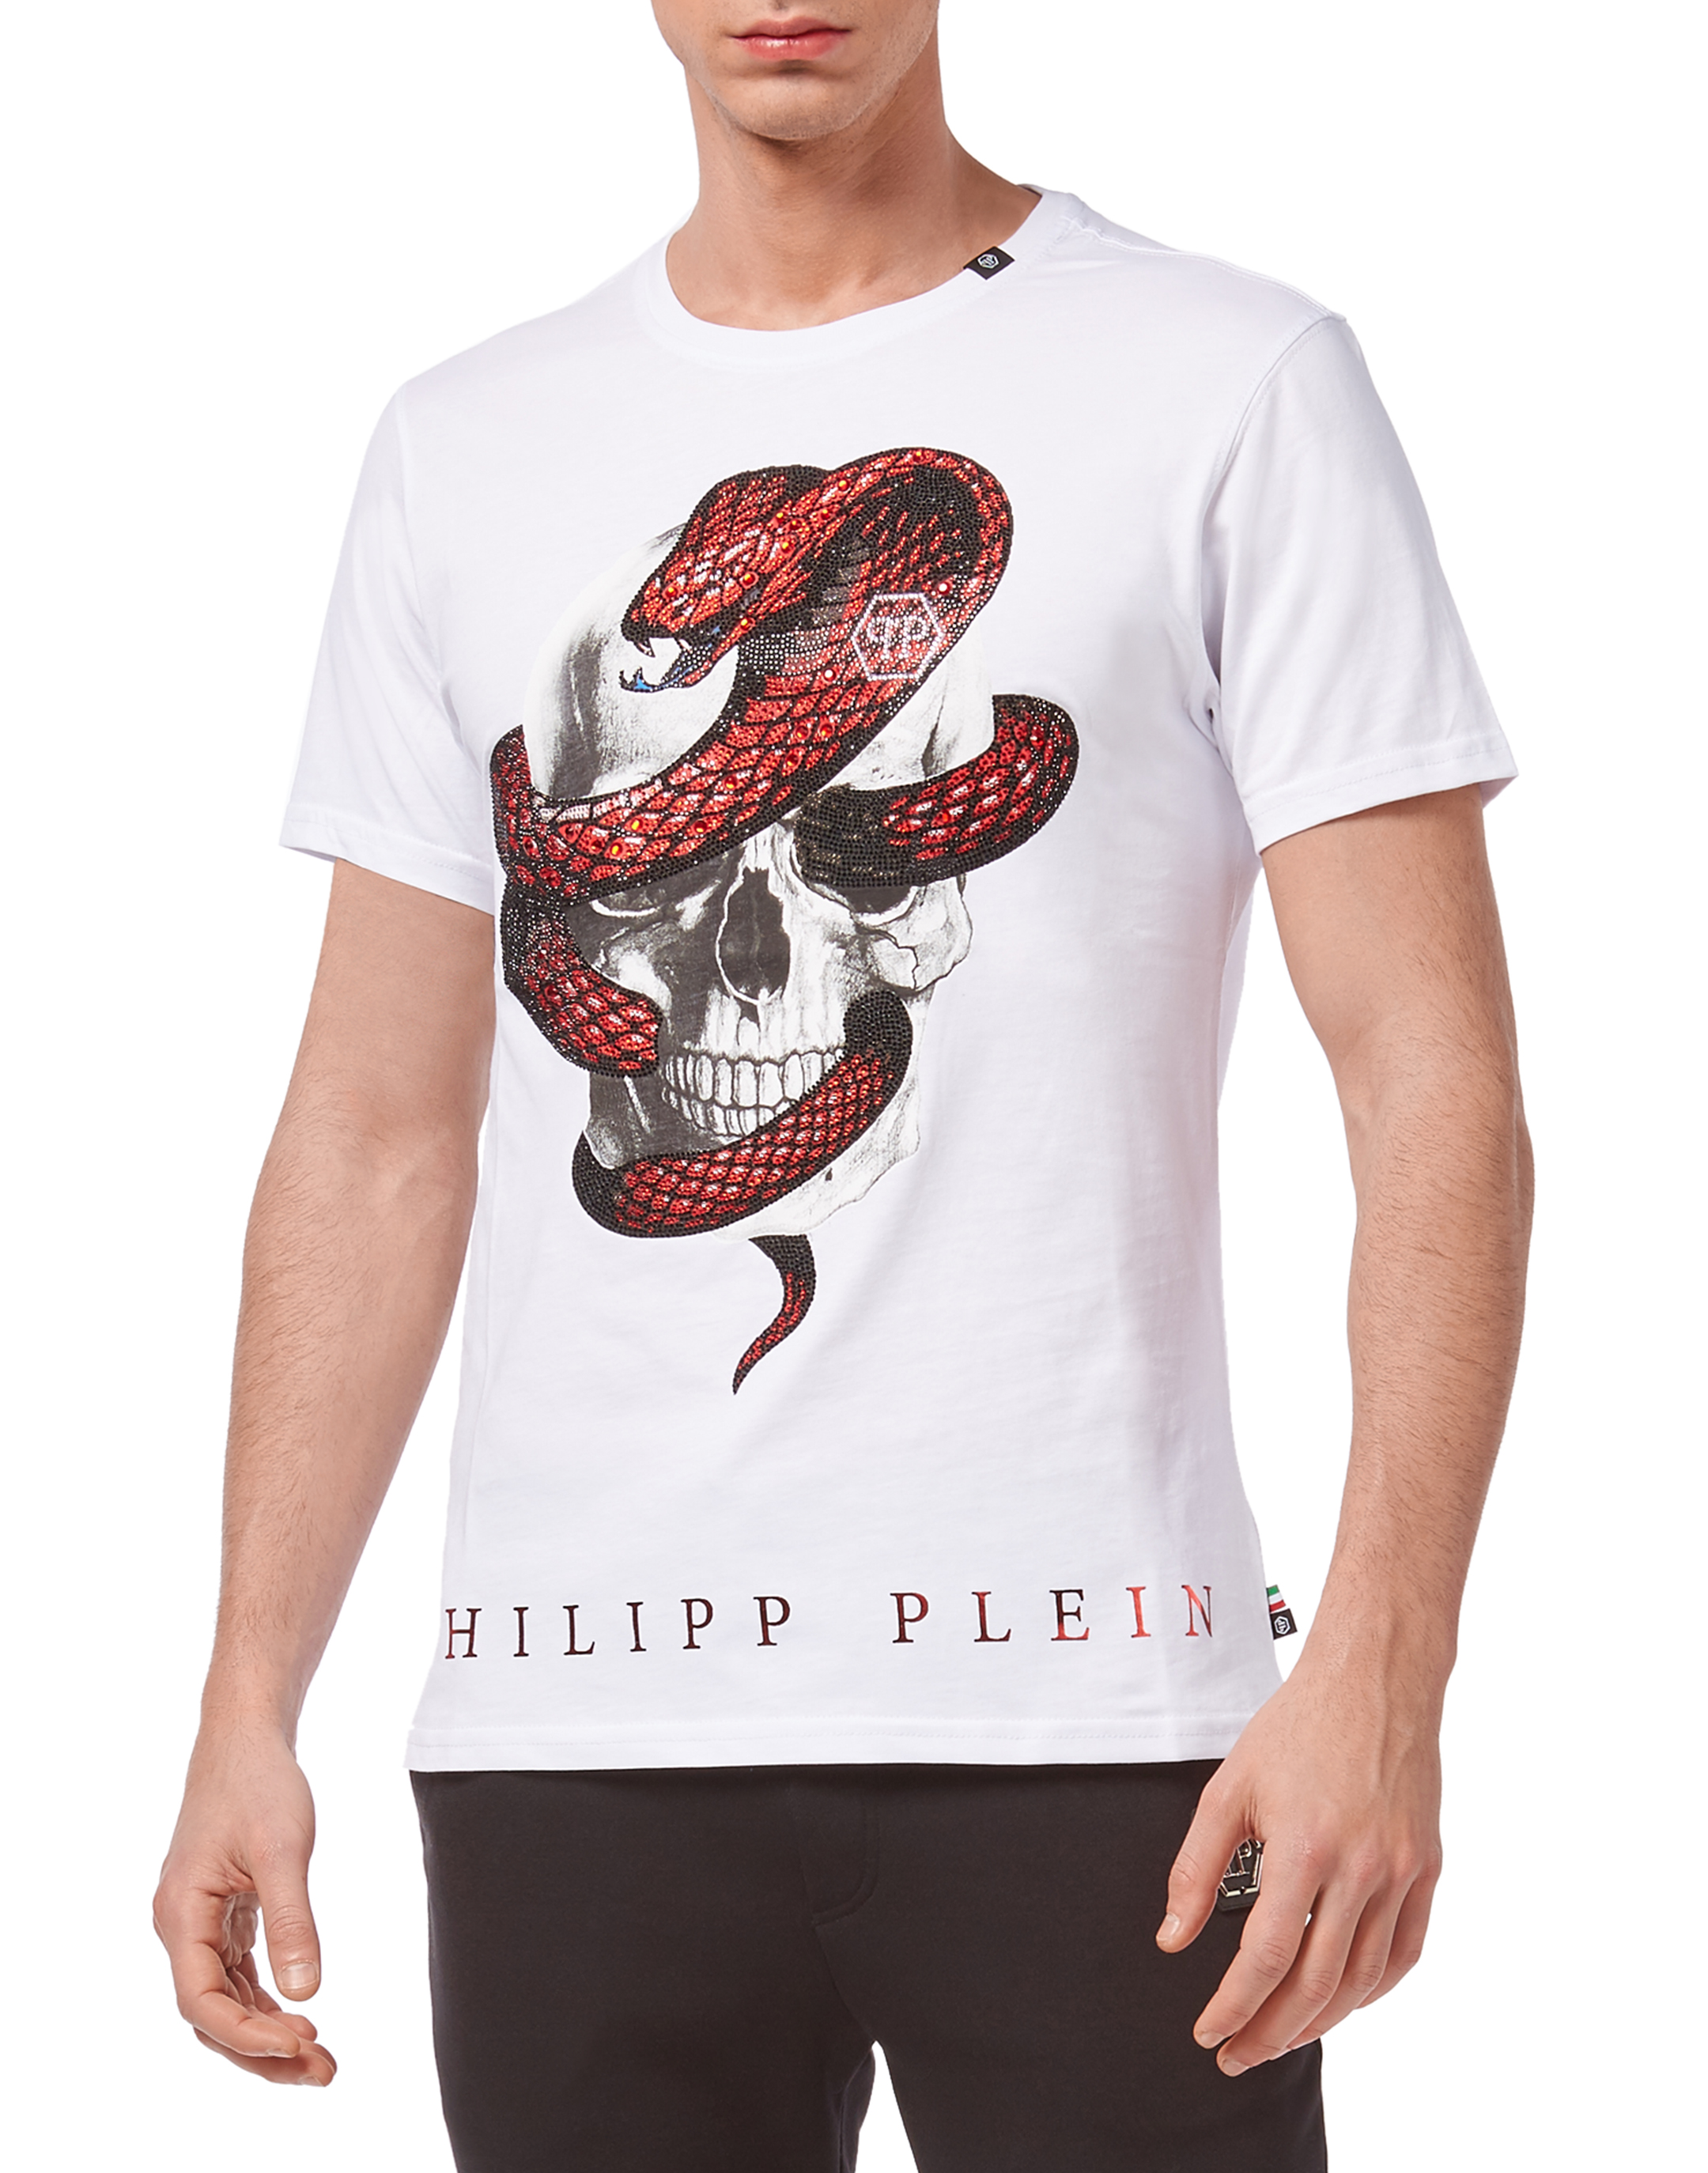 philipp plein cobra t shirt